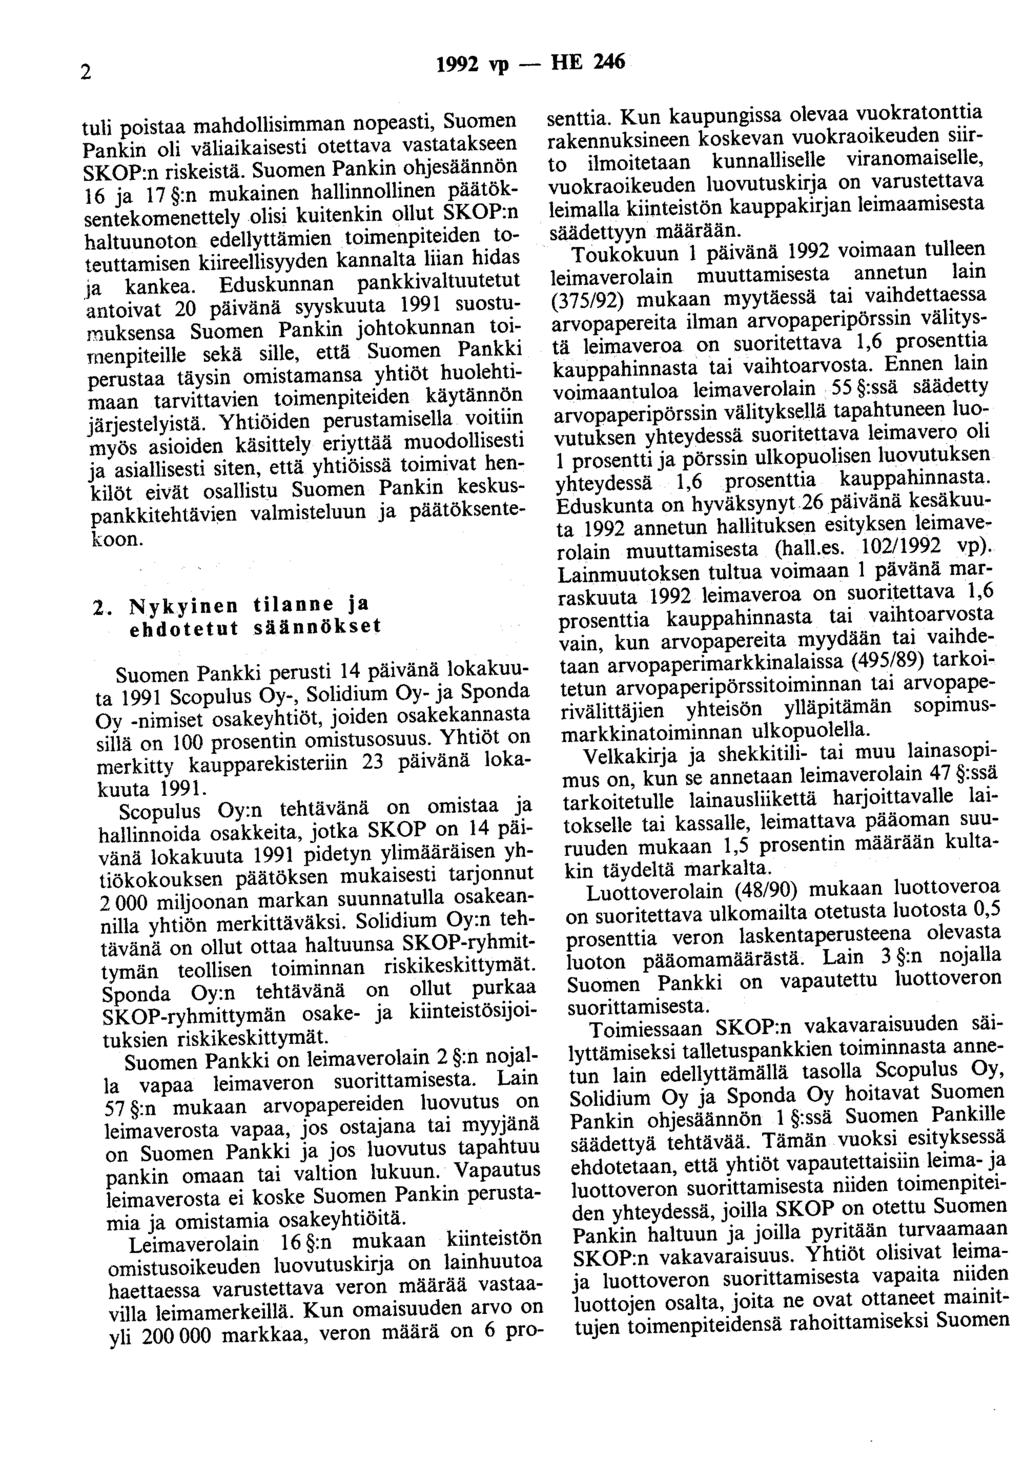 2 1992 vp - HE 246 tuli poistaa mahdollisimman nopeasti, Suomen Pankin oli väliaikaisesti otettava vastatakseen SKOP:n riskeistä.